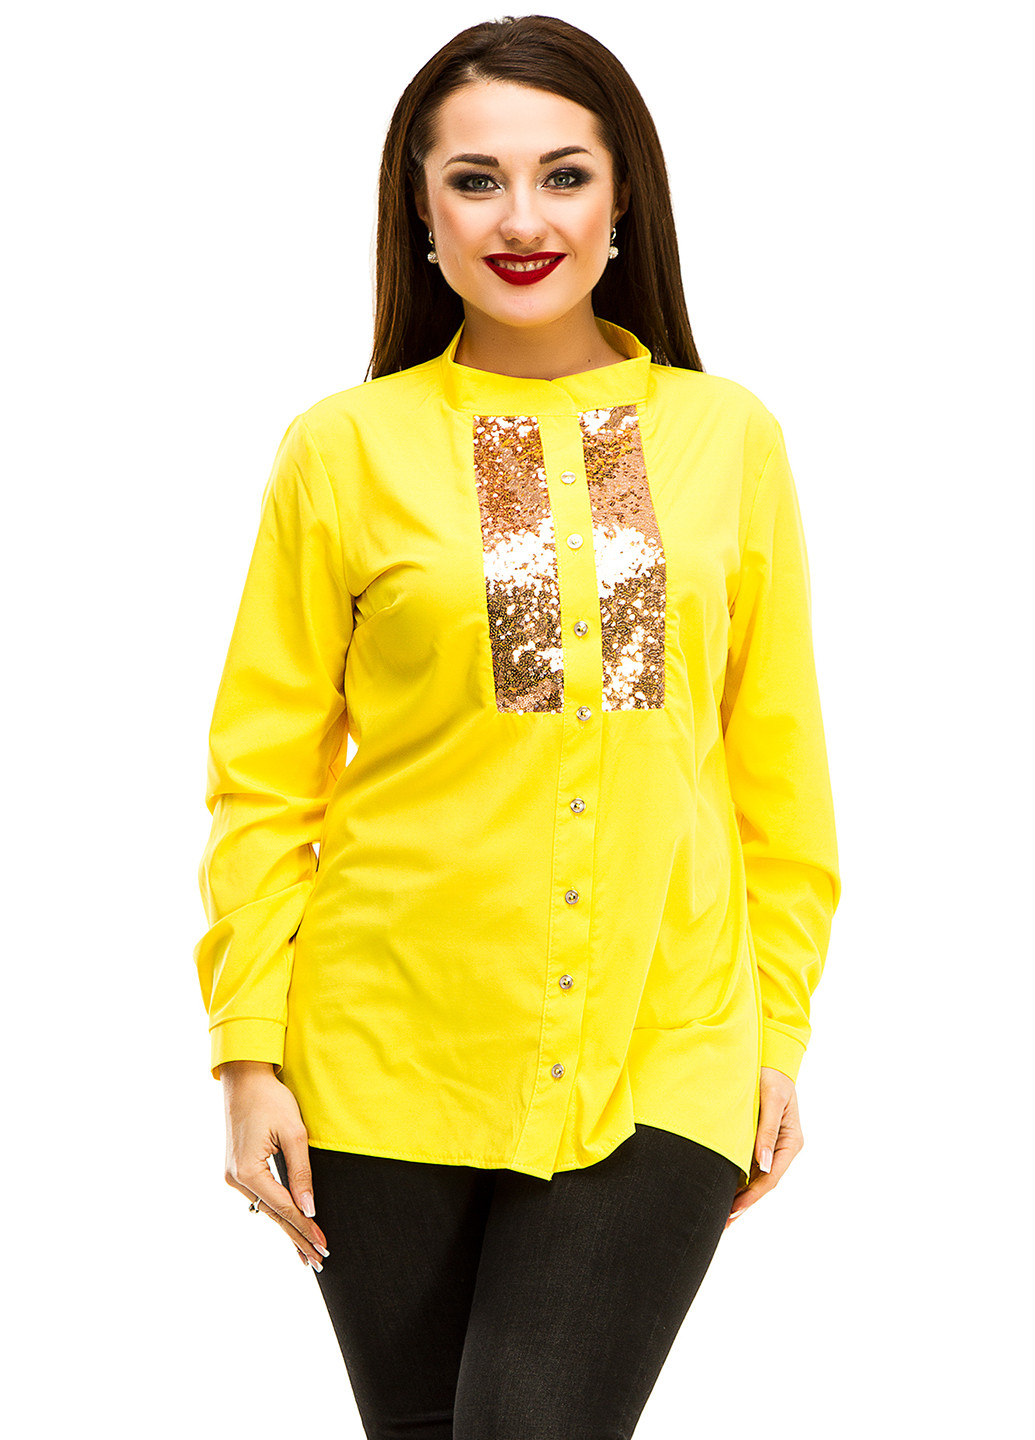 Жовта блуза з довгим рукавом Lady Style